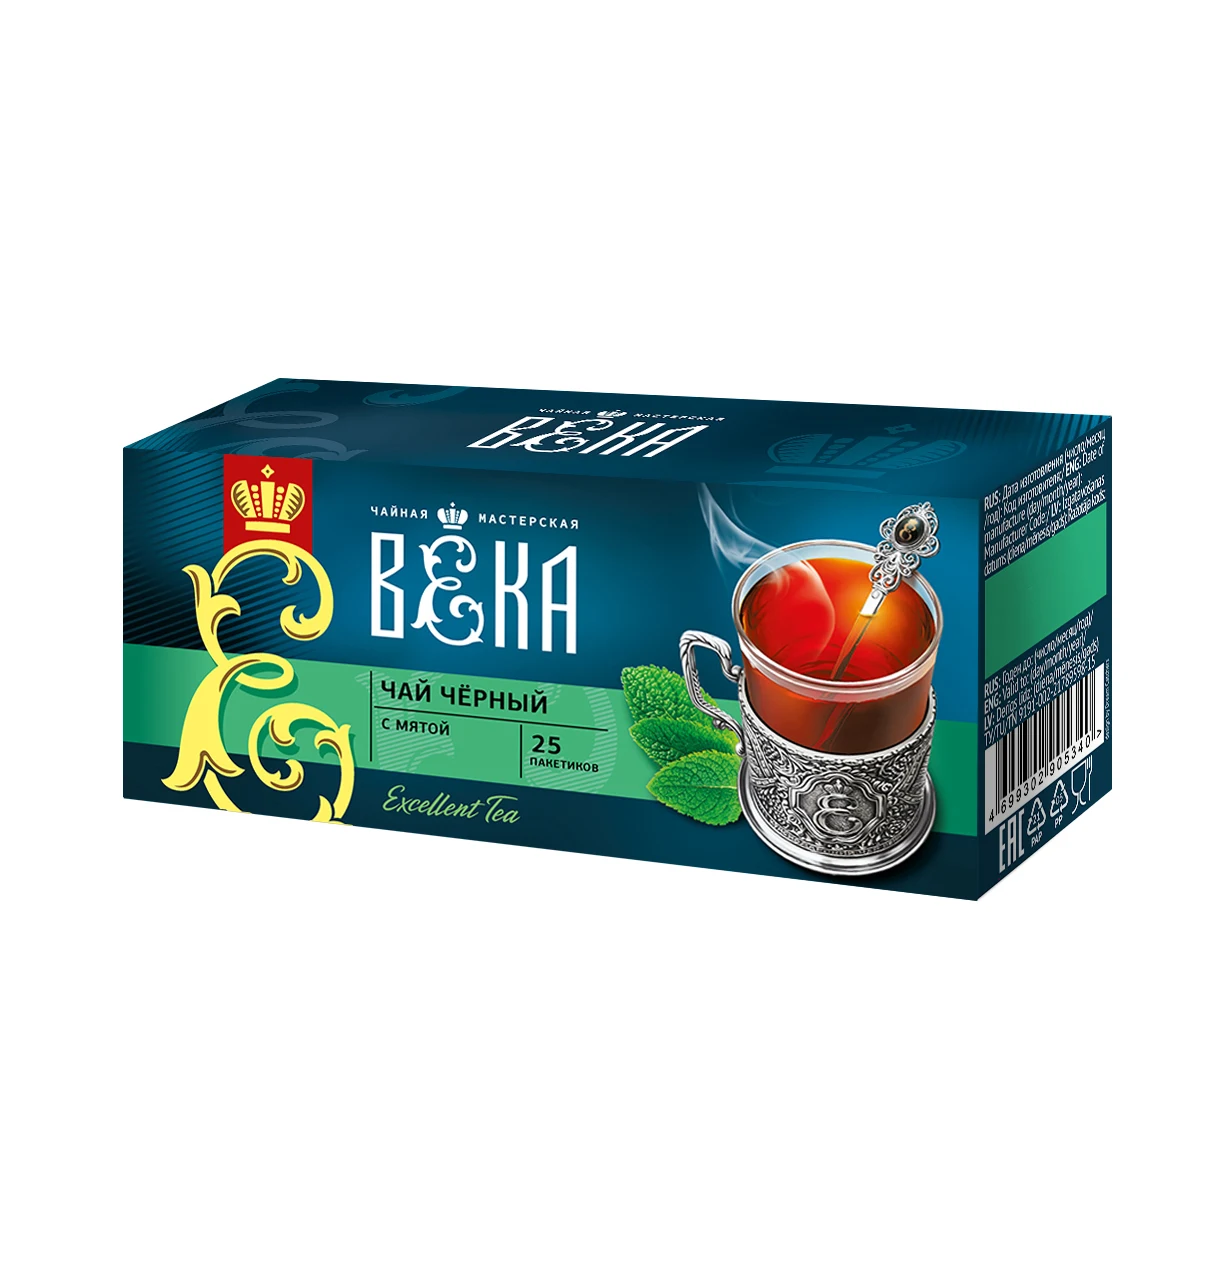 Черный чай с мятой, Краснодарский чай BEKA, 25 шт. Оптовая продажа от производителя